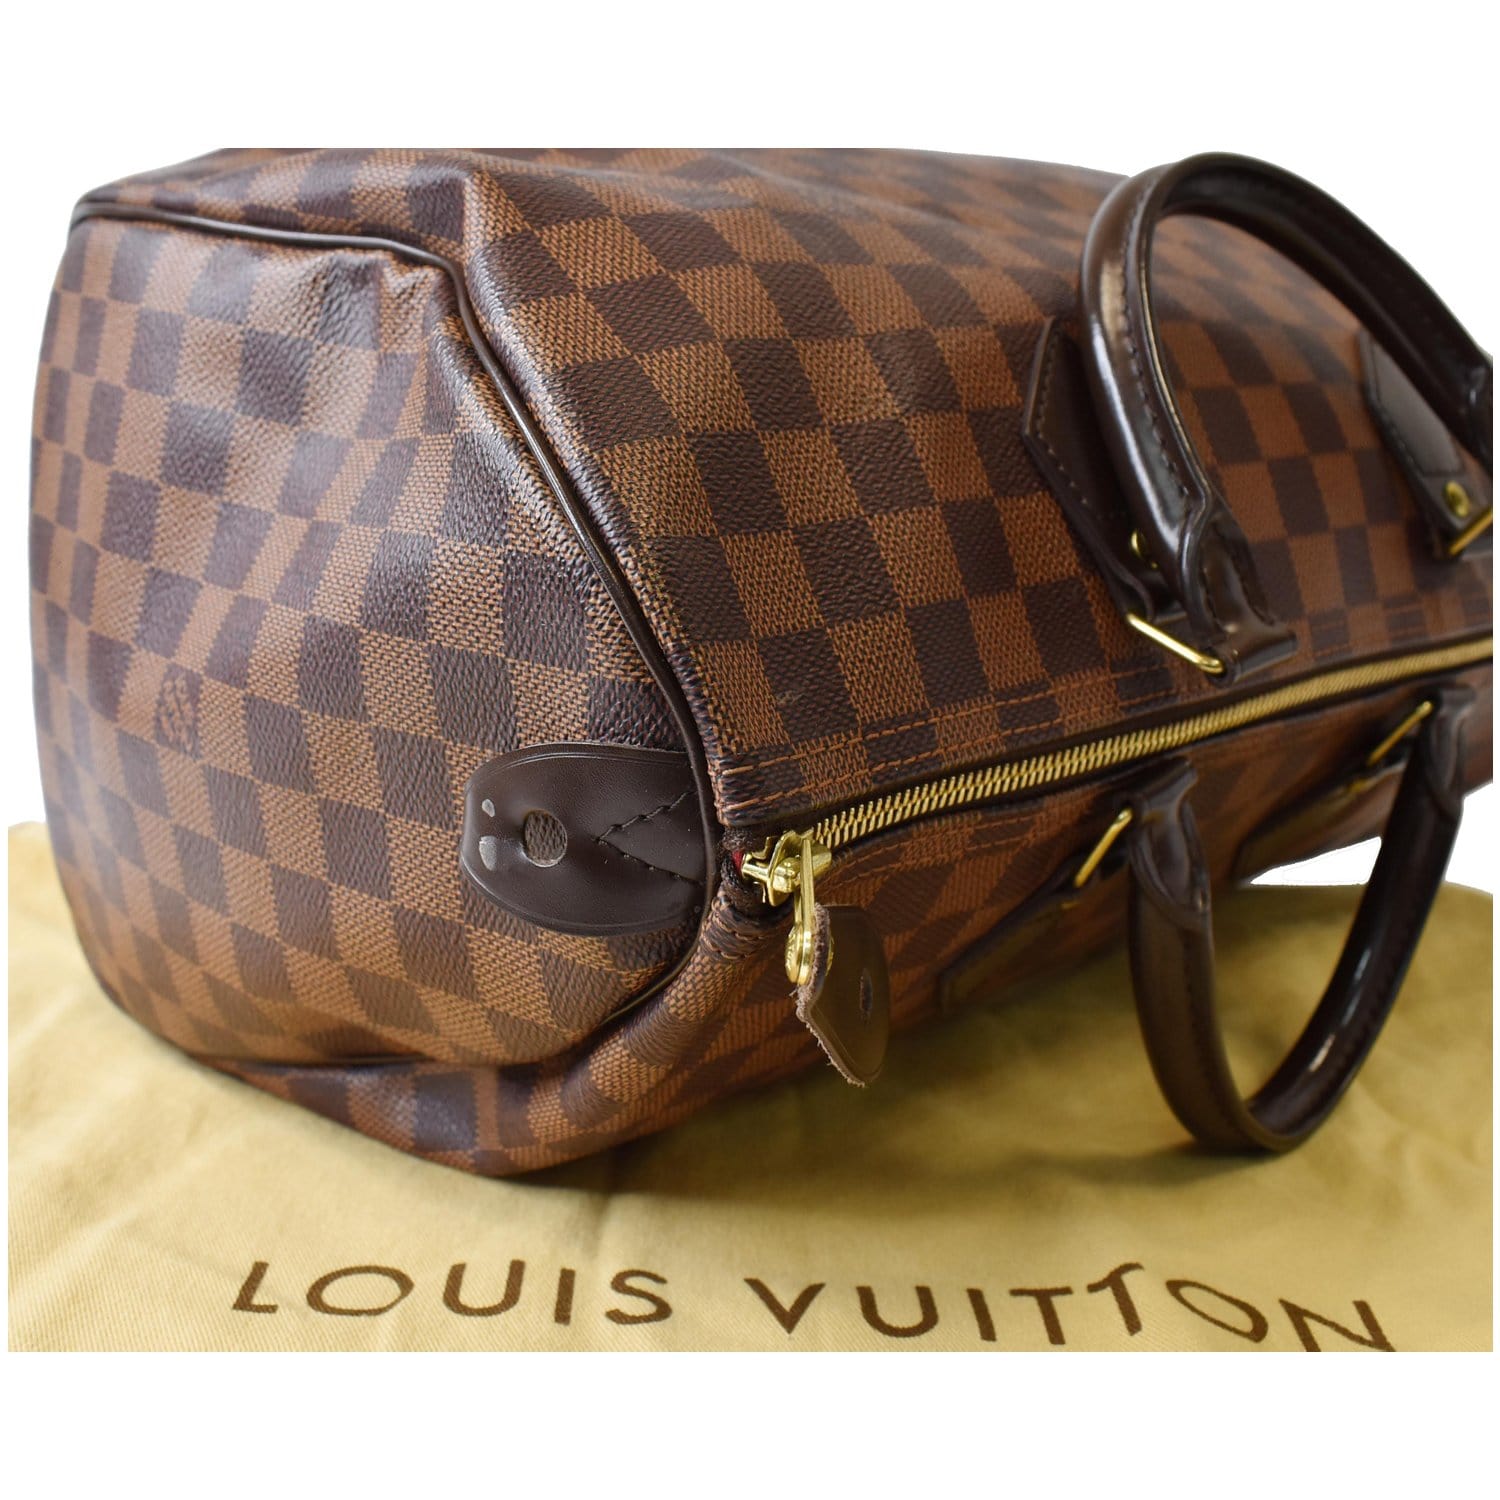 Louis Vuitton Speedy 35 Brown Damier Ebene